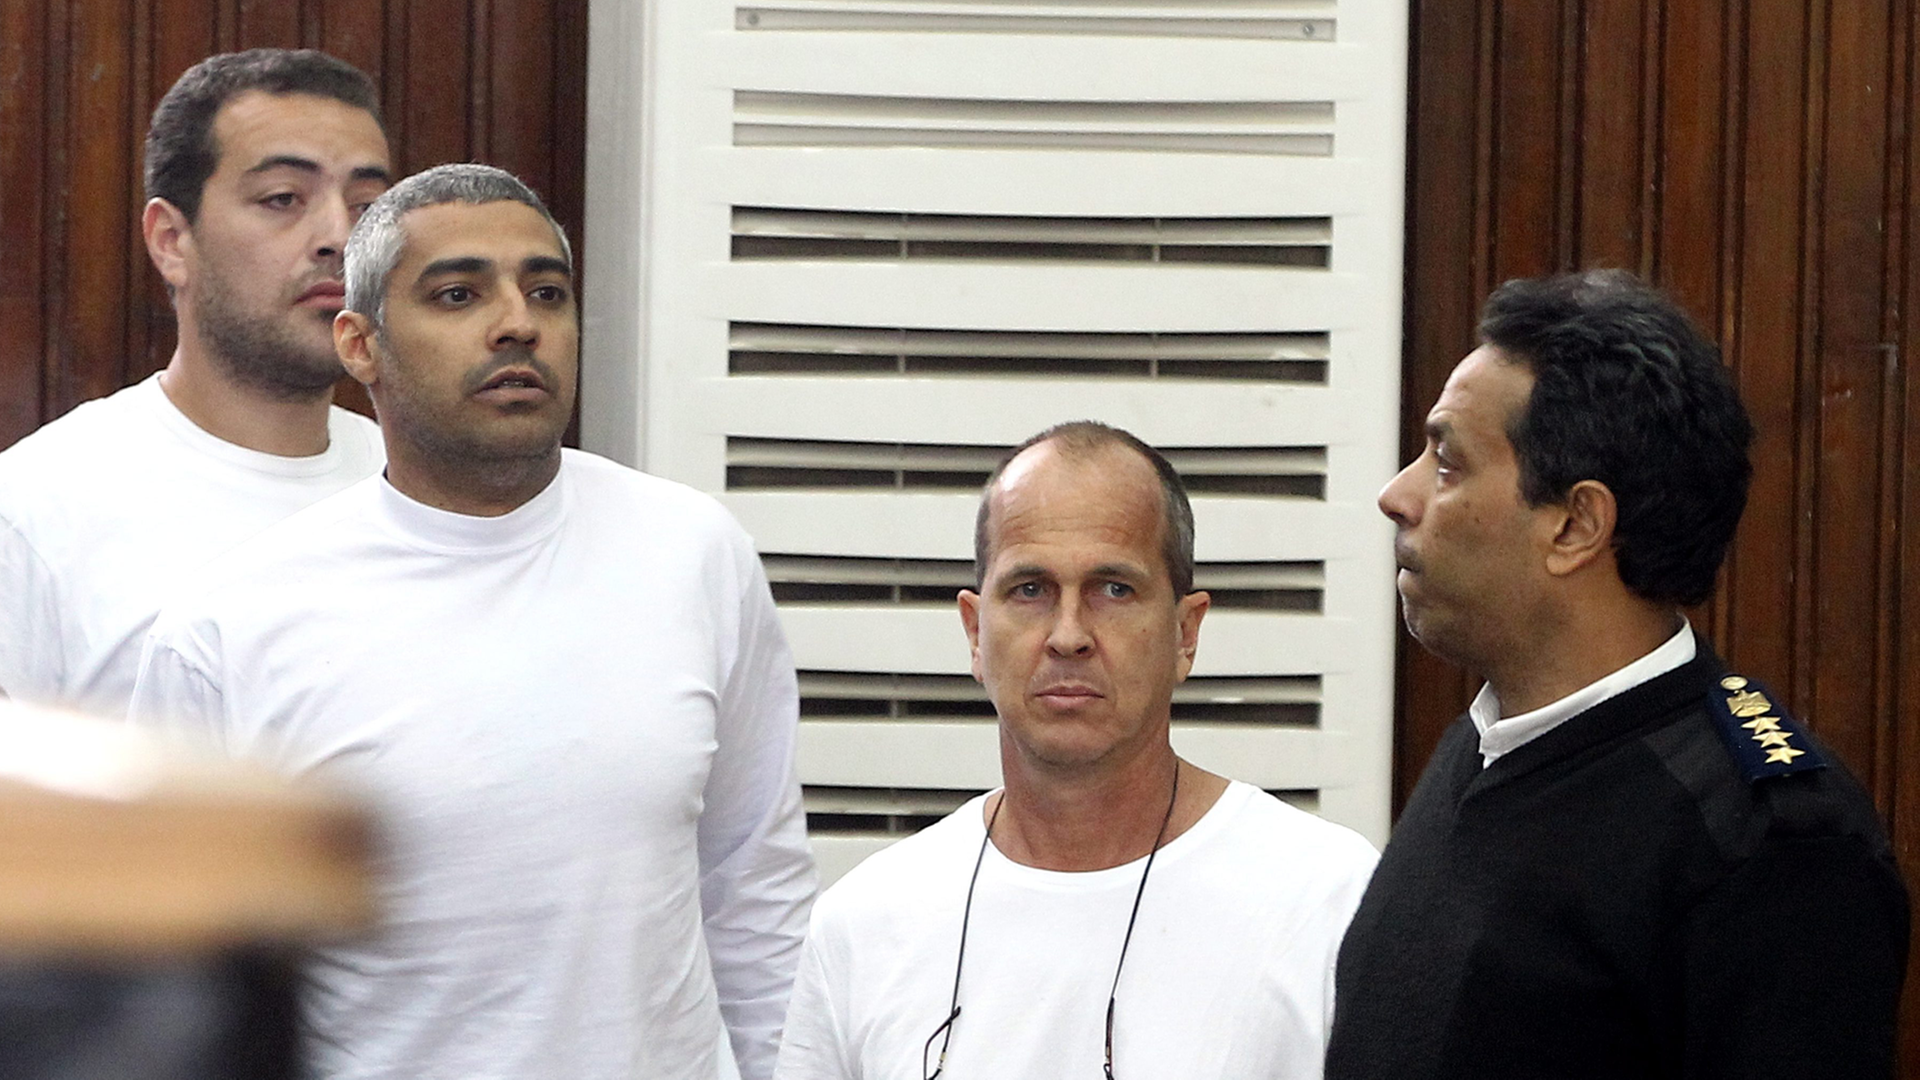 Der australische Journalist Peter Greste (2.v.r.) und seine inhaftierten Kollegen während der Verhandlung.